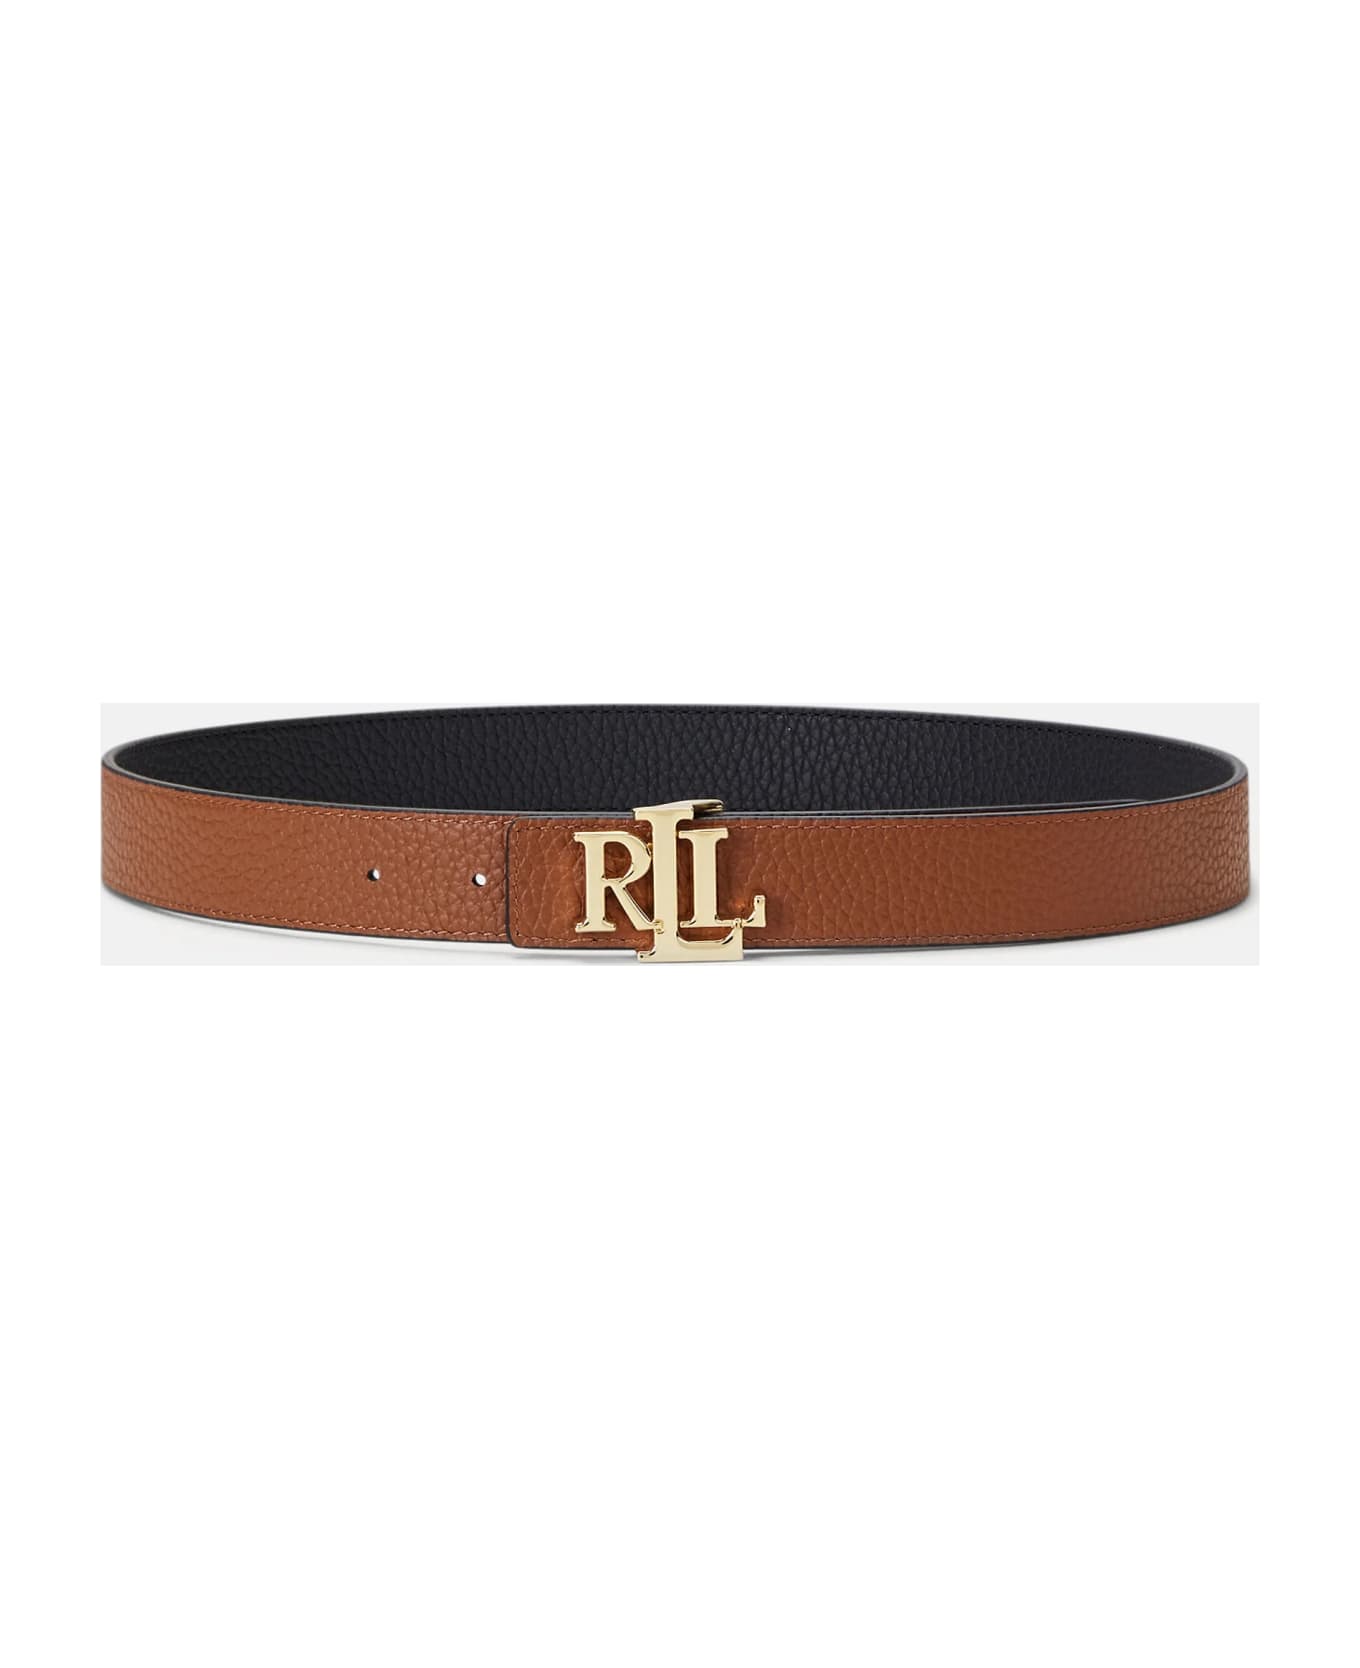 Ralph Lauren Rev Lrl 20 Belt Skinny - Black Lauren Tan